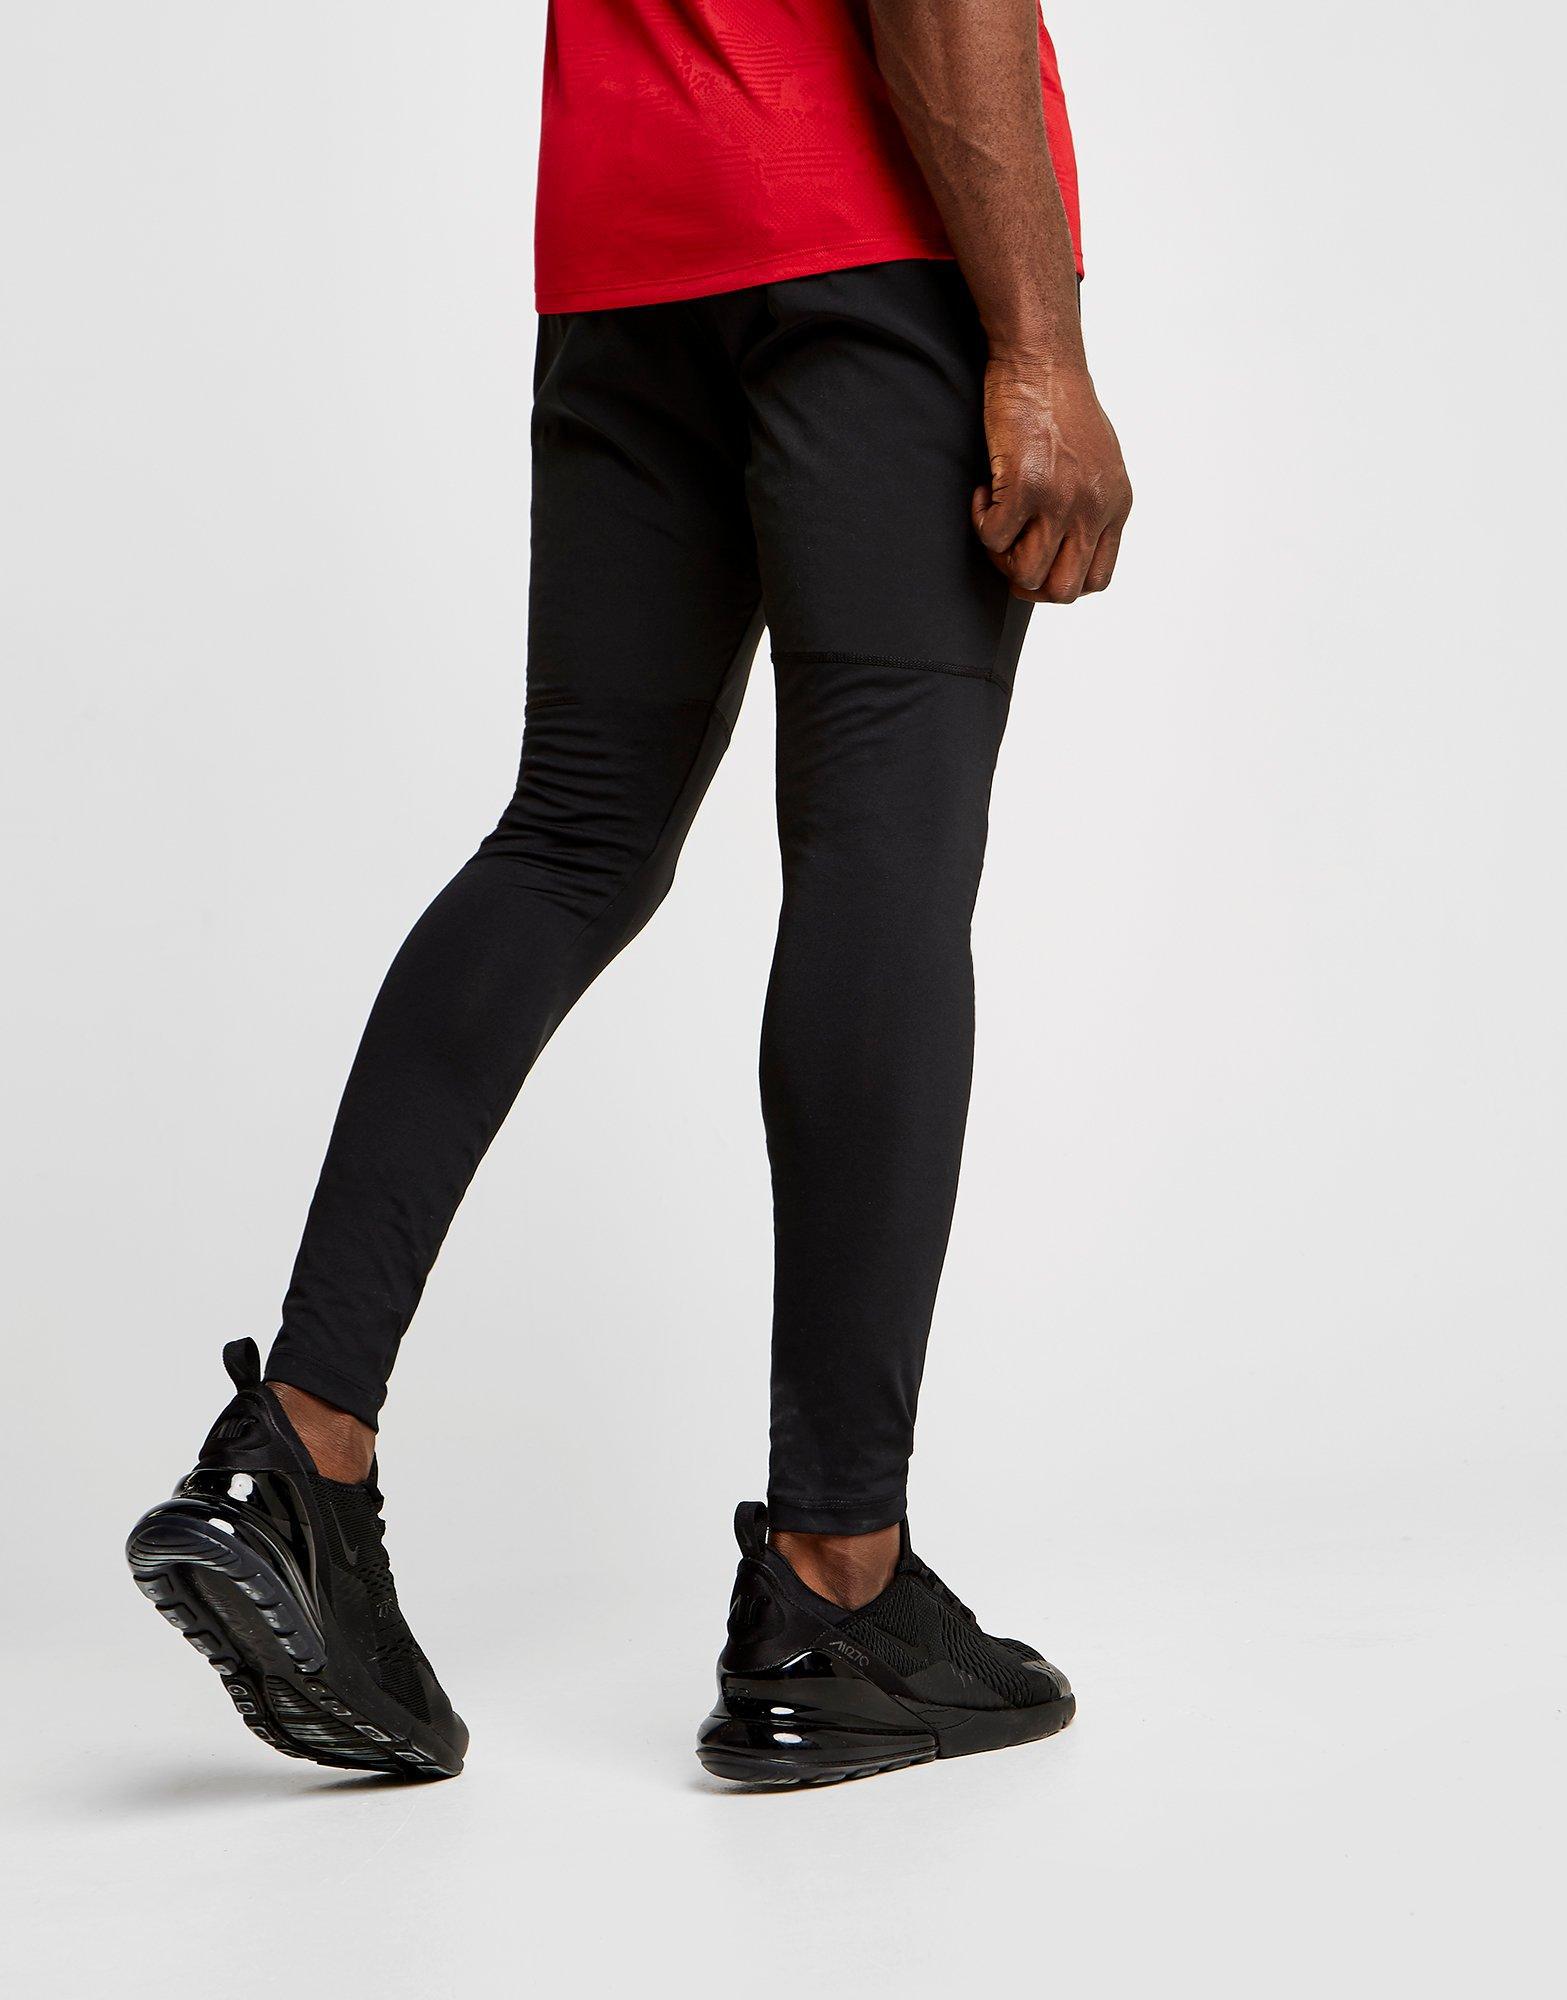 Nike Synthetic Hybrid Slim Pants in 